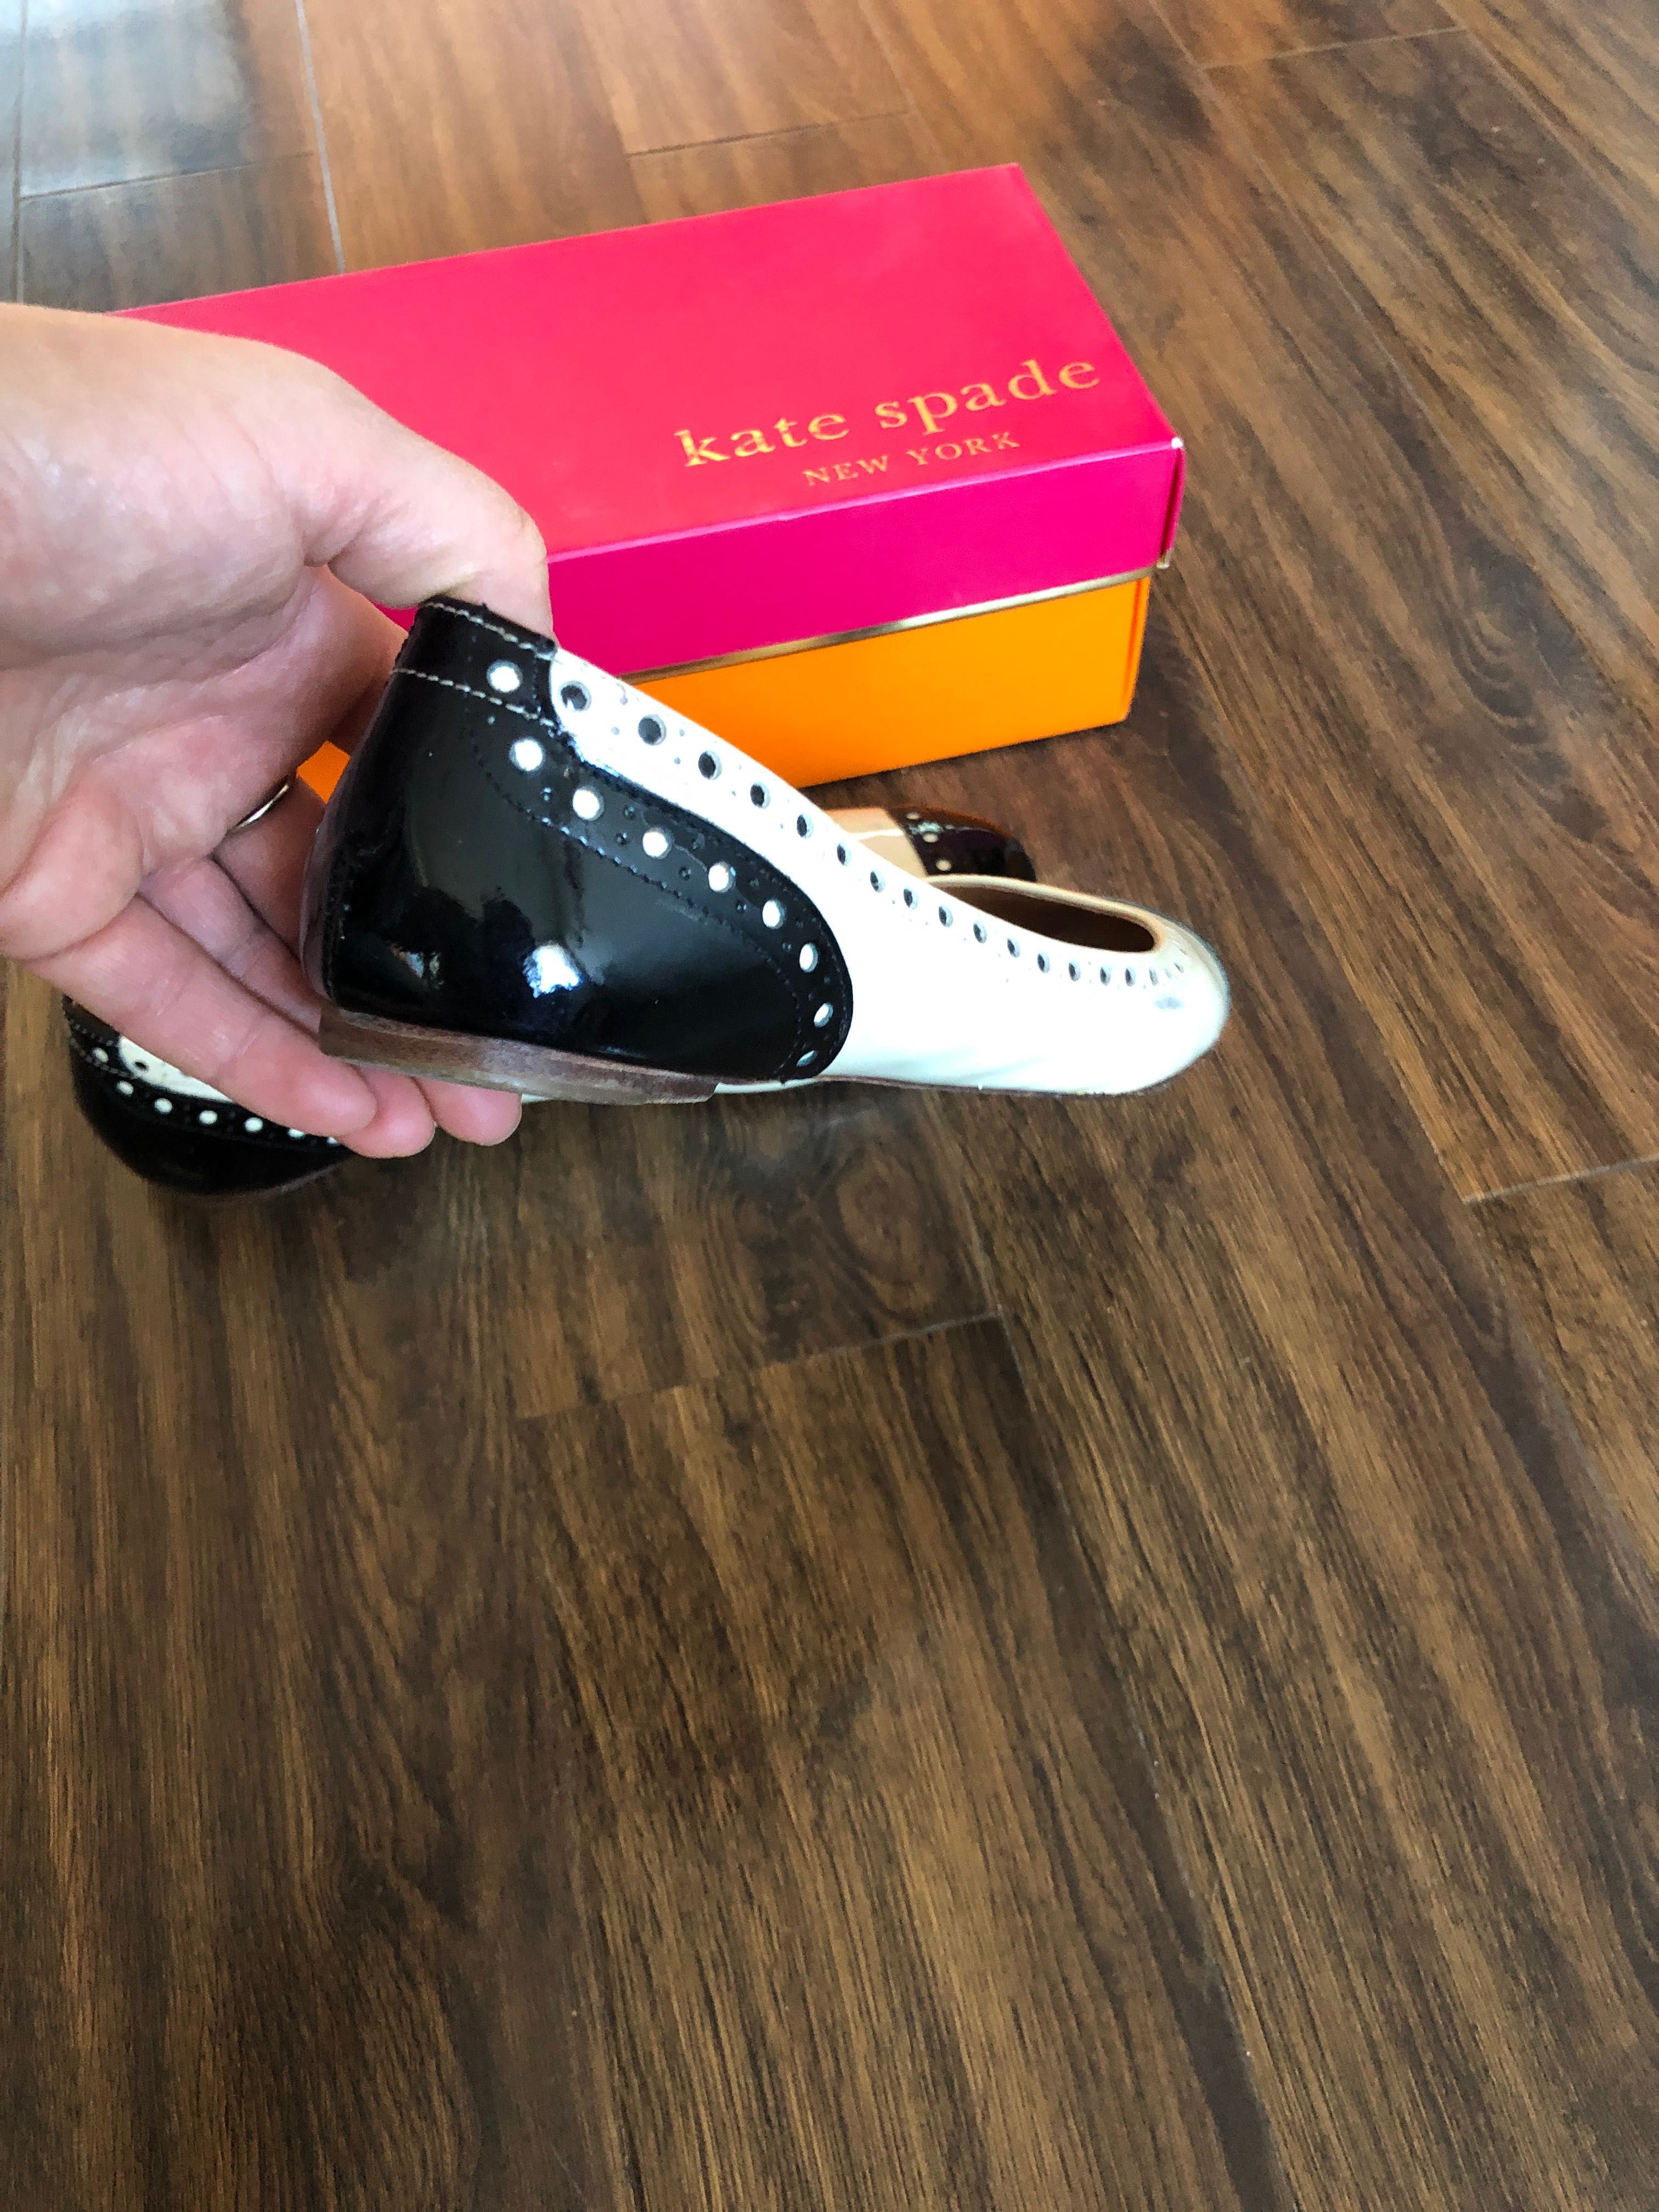 Дамски обувки балеринки Кейт Спейд,Kate Spade,39 р-р